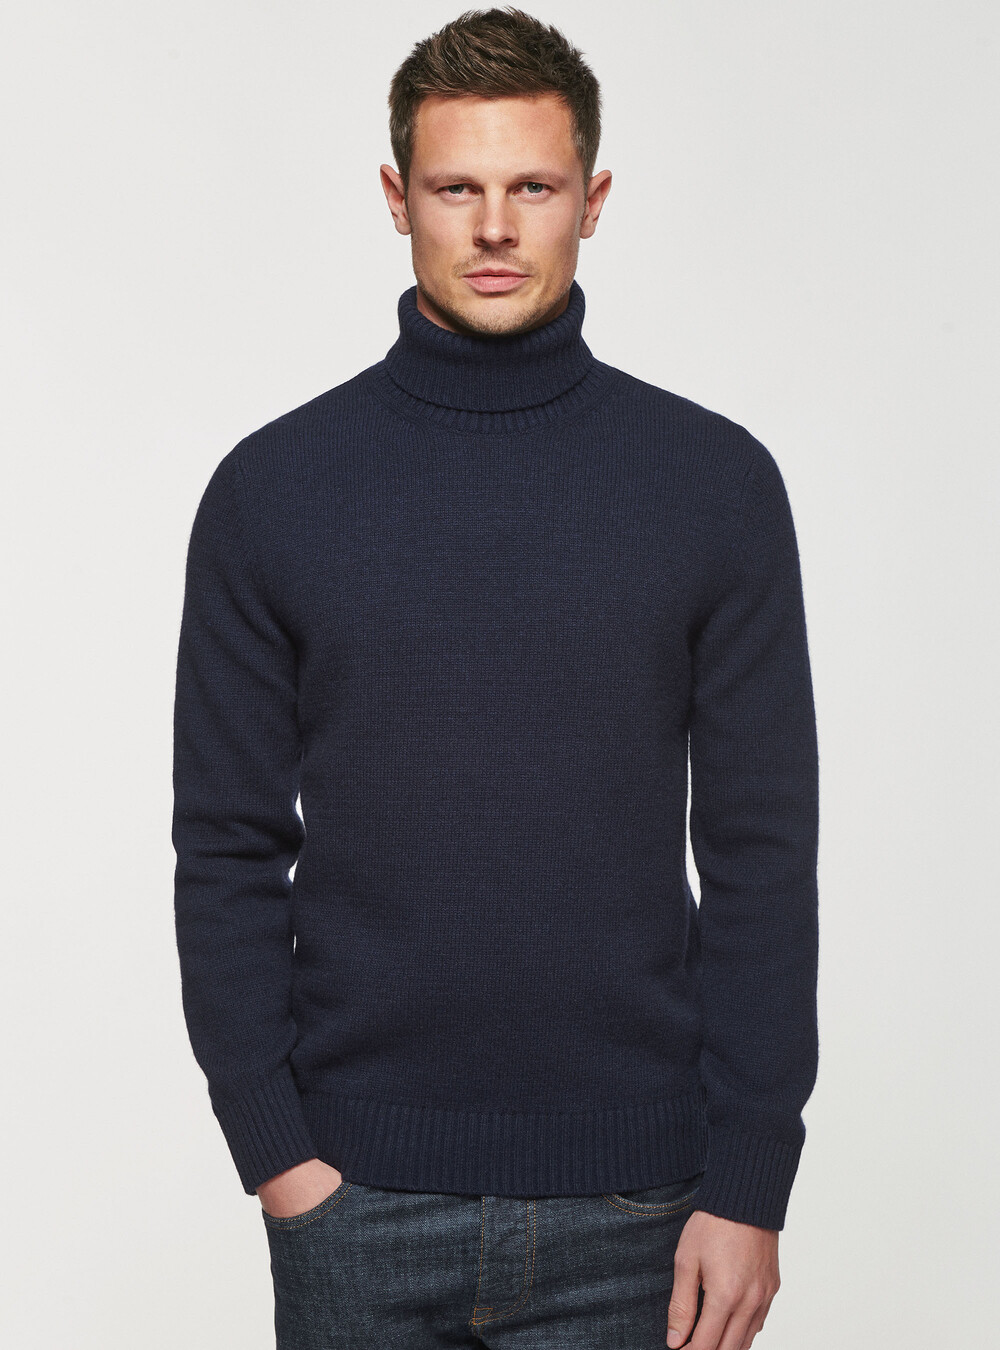 Wool-blend sweater | GutteridgeEU | Men's catalog-gutteridge-storefront